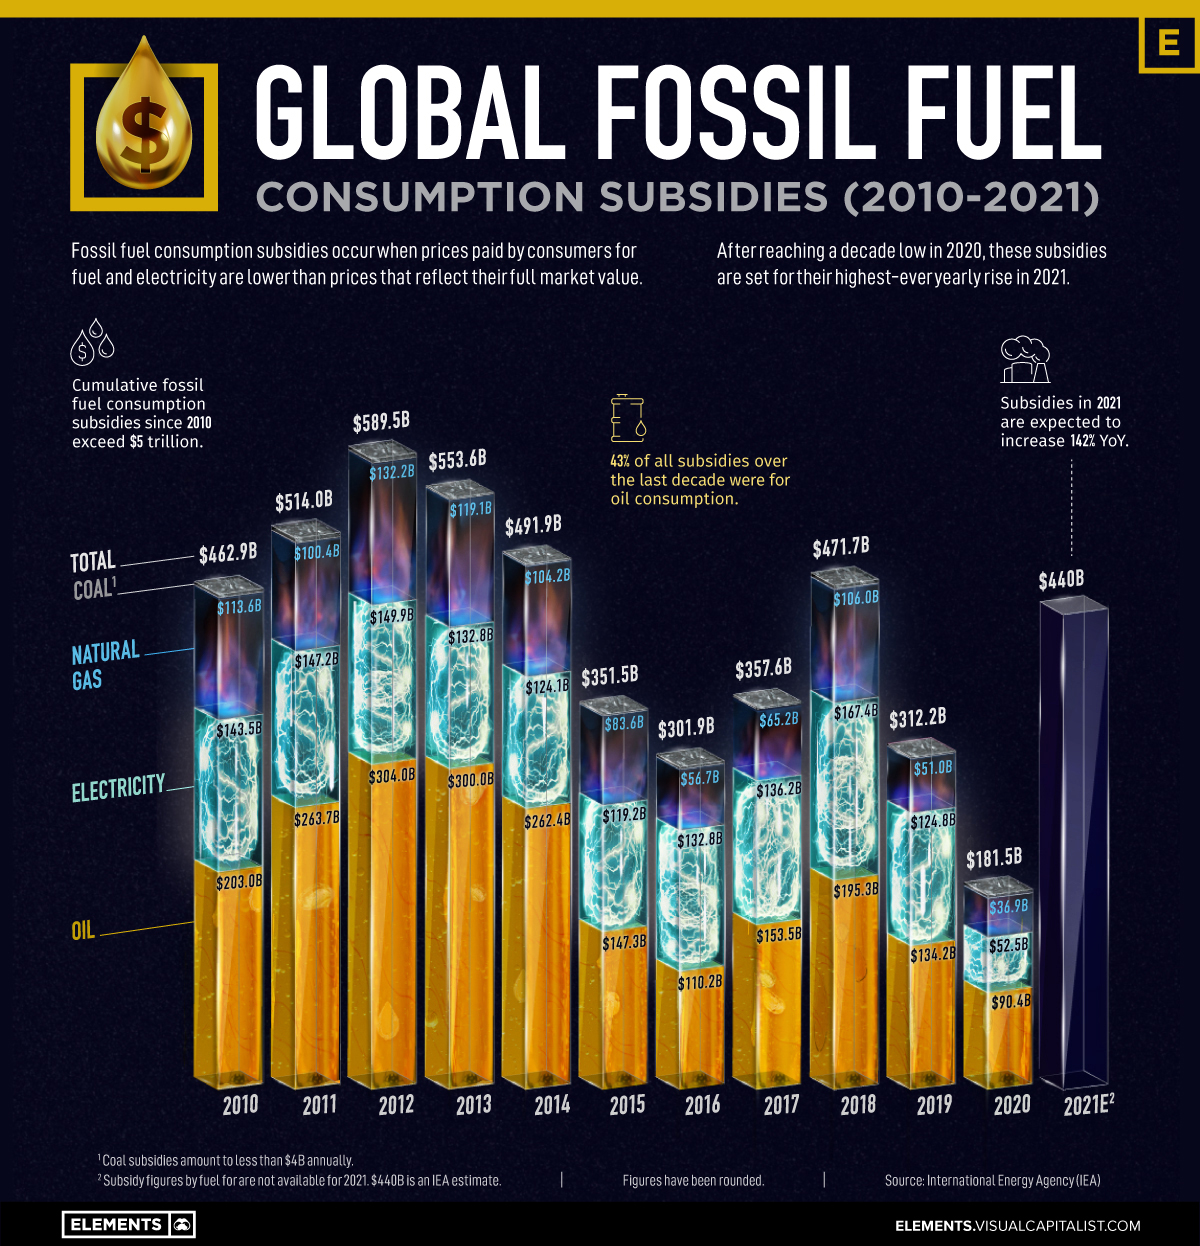 Fossil fuel subsidies